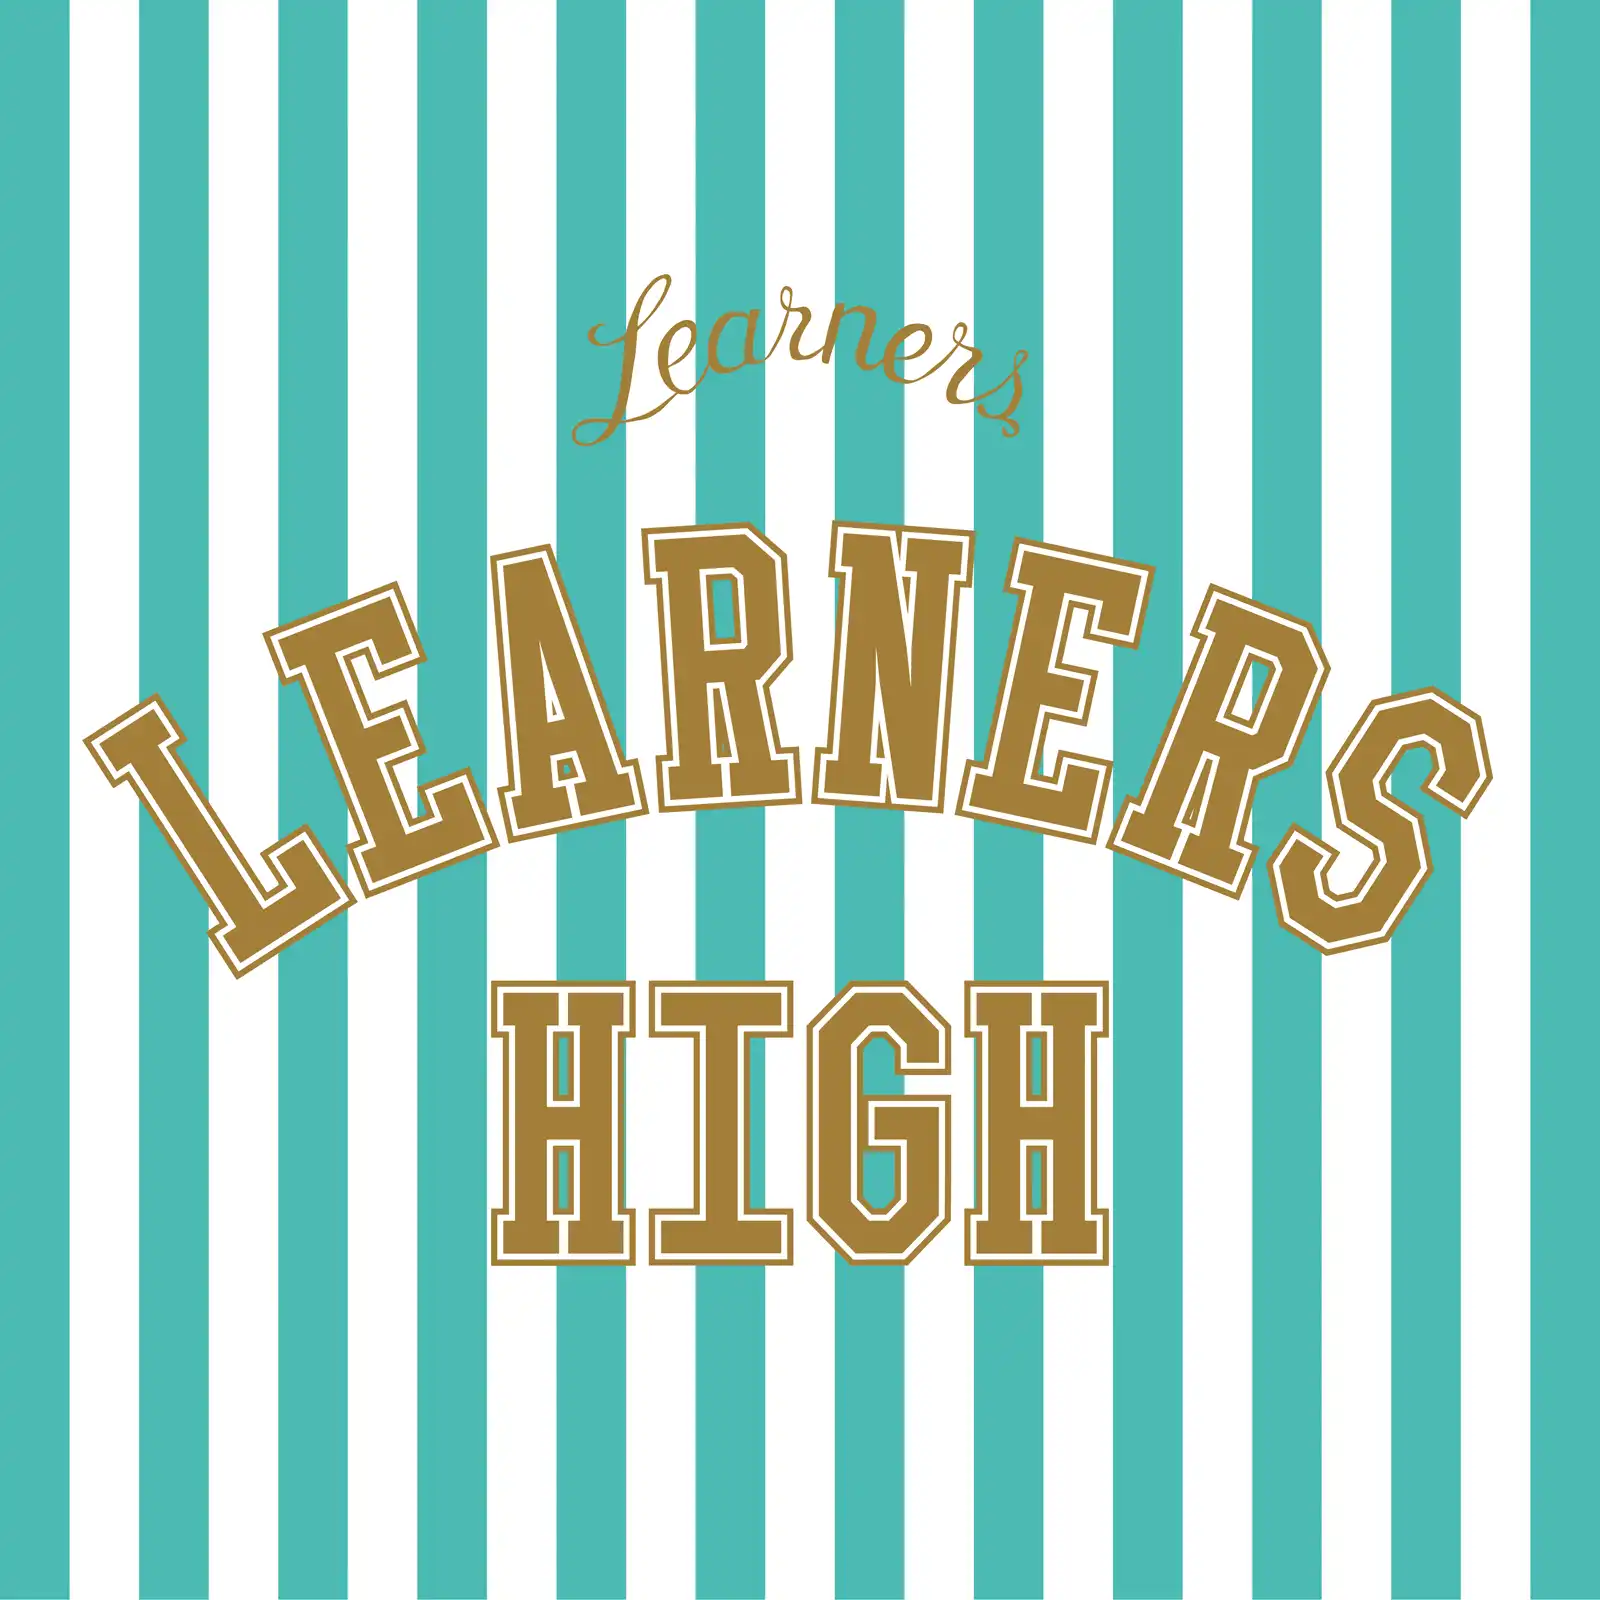 LEARNERS / LEARNERS HIGH